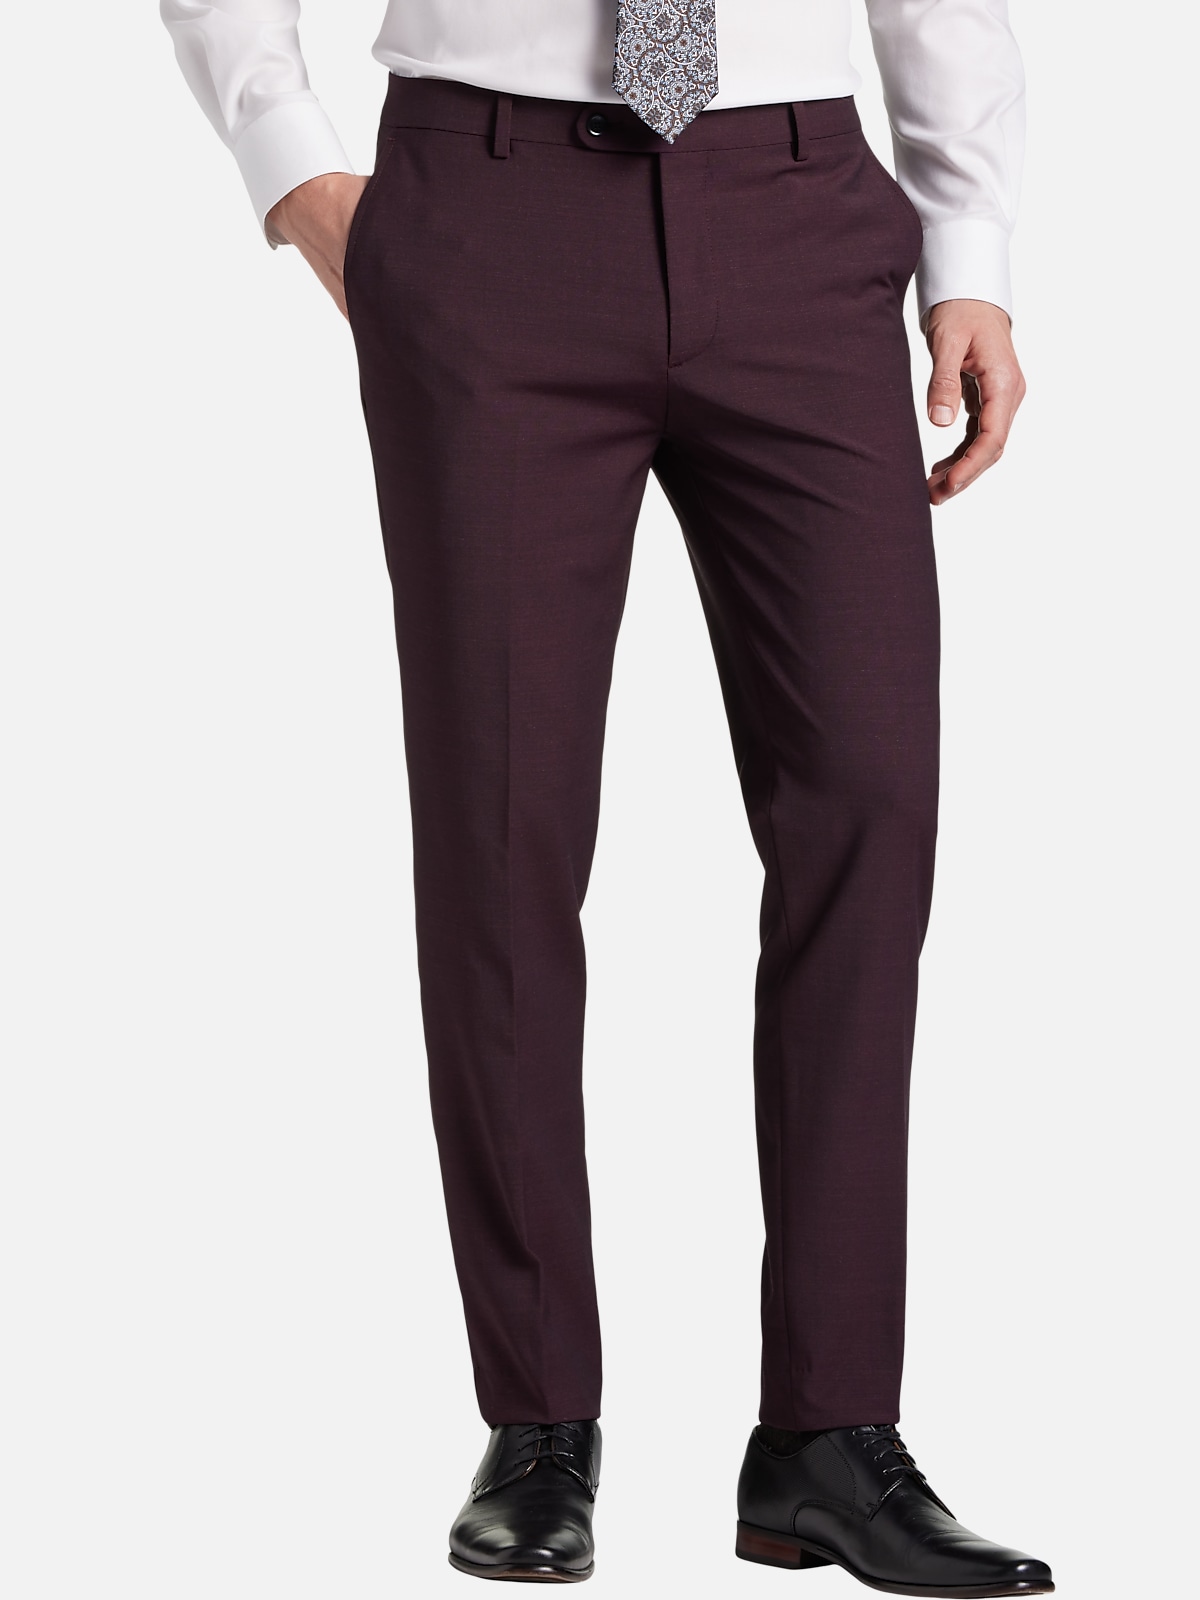 JOE Joseph Abboud Slim Fit Suit Separates Pants | New Arrivals| Men's ...